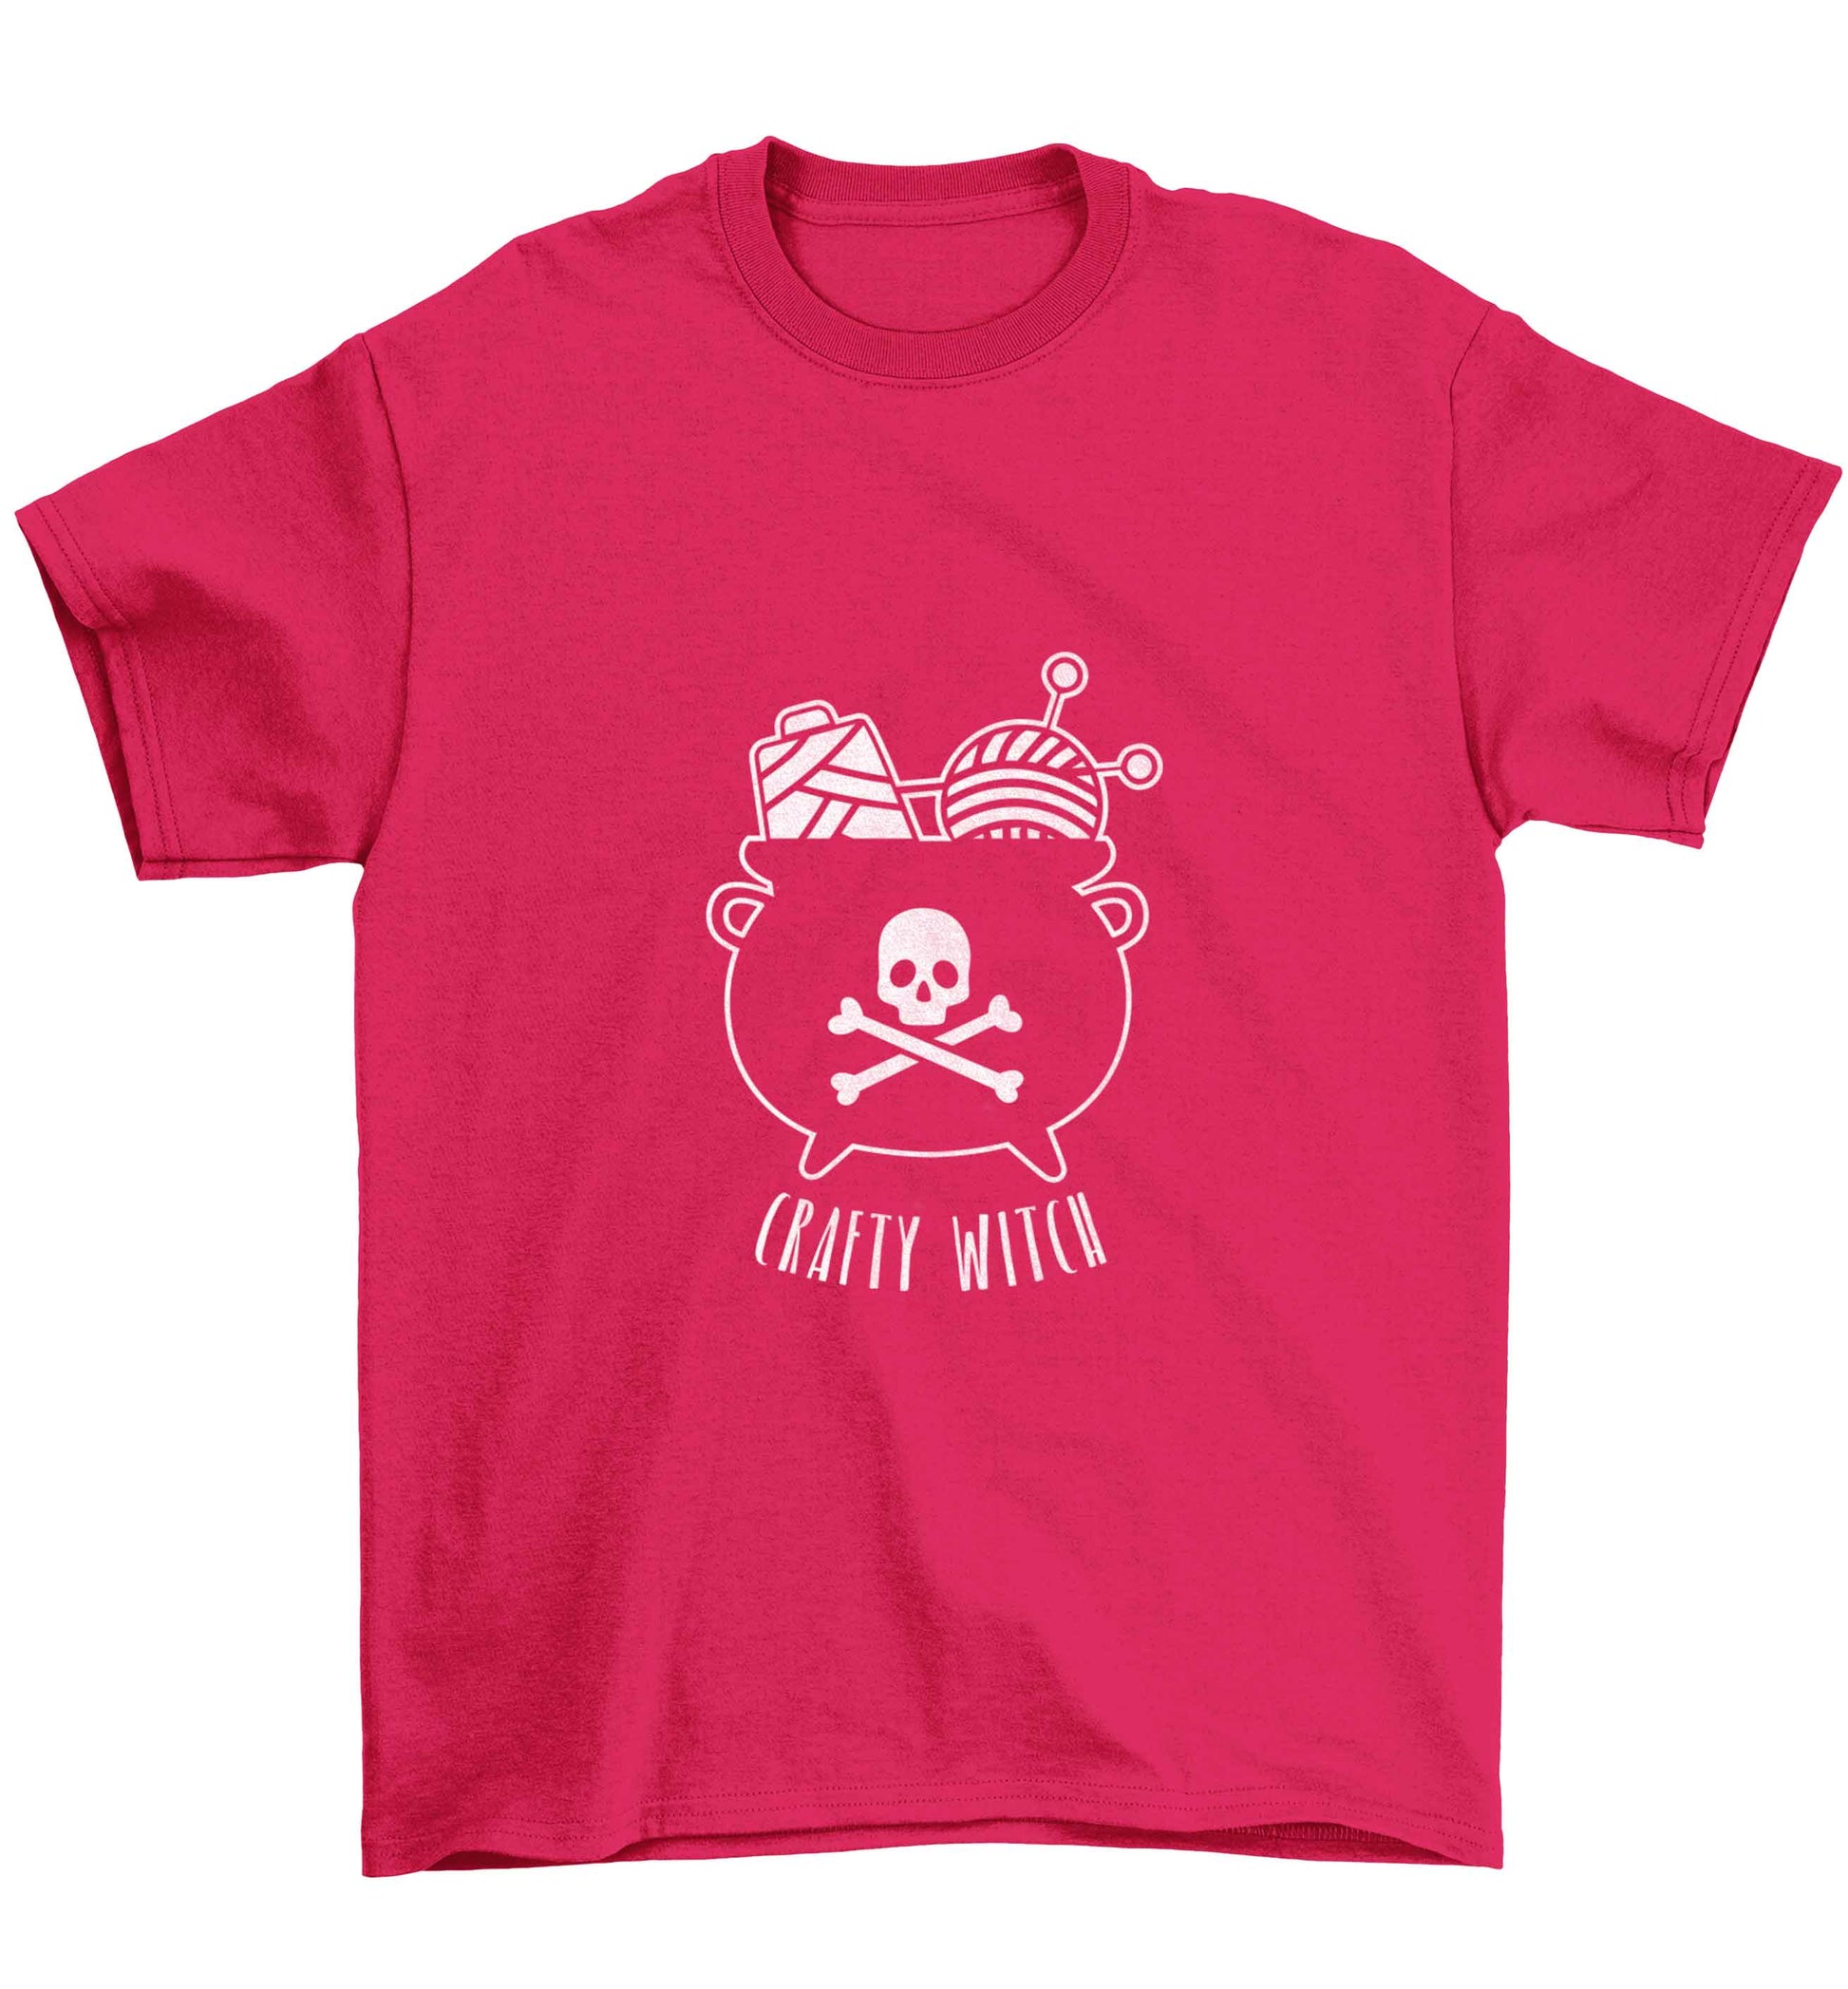 Crafty witch Children's pink Tshirt 12-13 Years